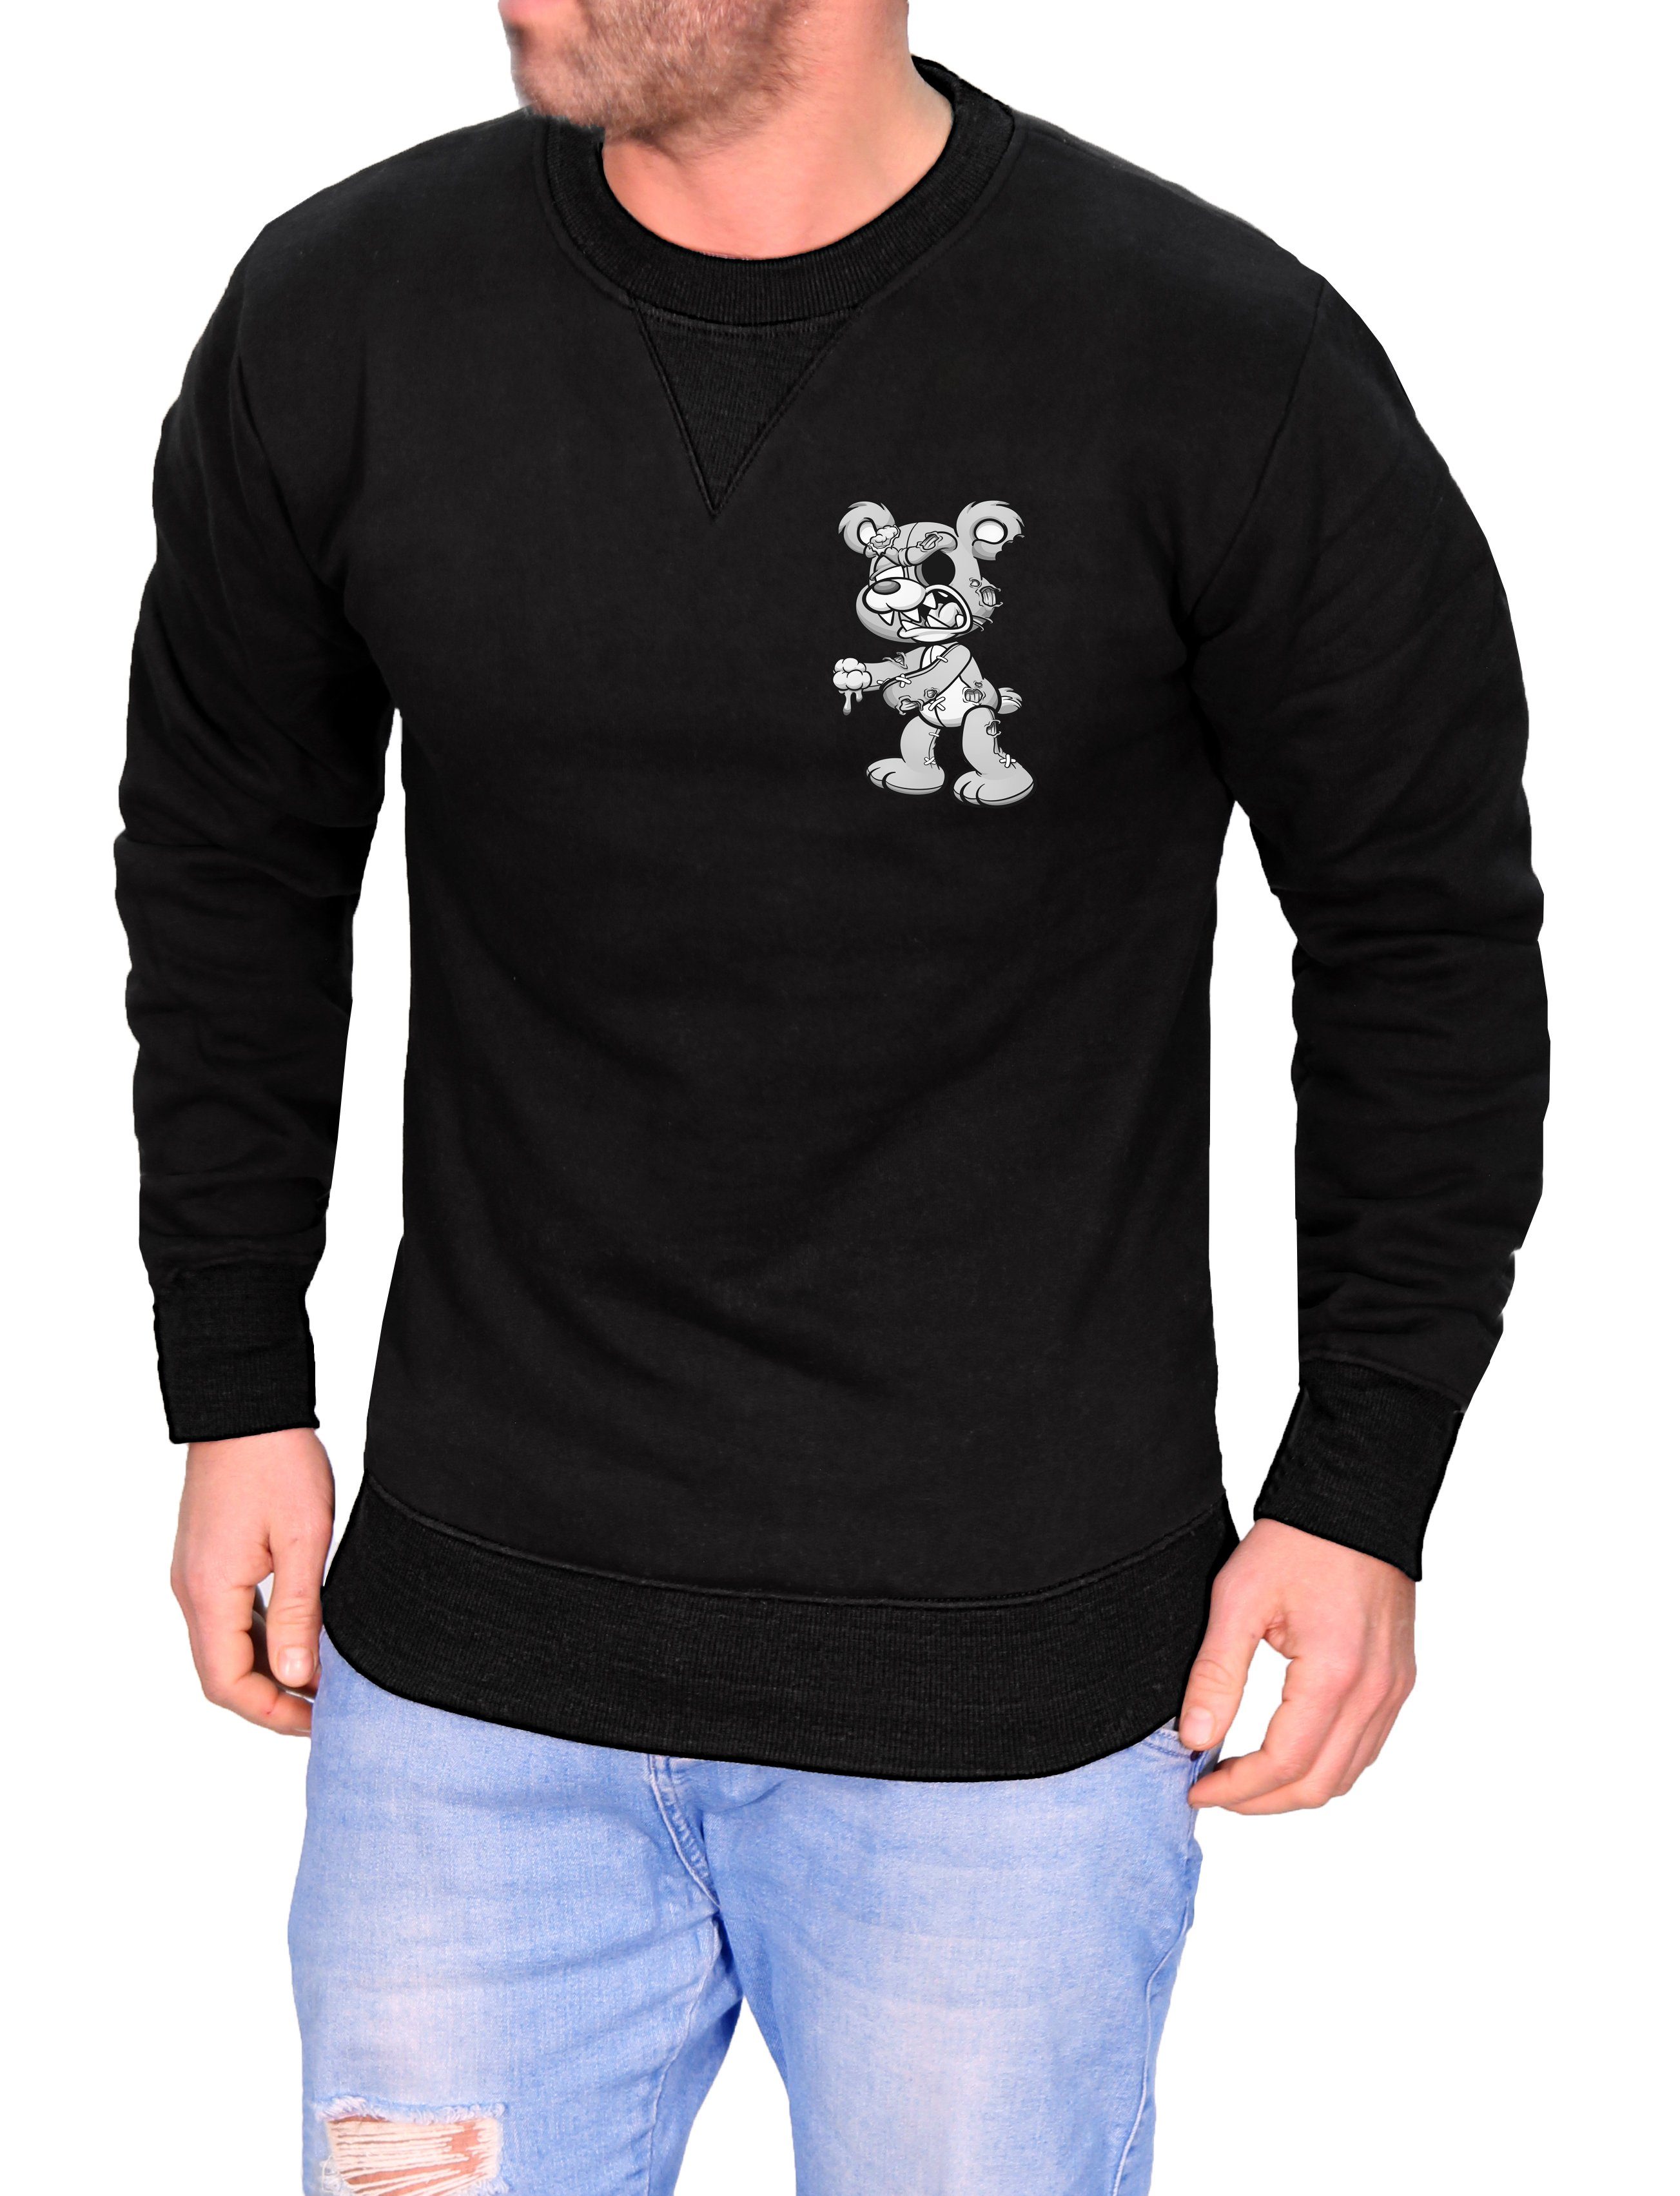 RMK Rundhalspullover Herren Pullover Langarmshirt Sweatshirt Pulli mit Cartoon Motiv Schwarz-Grau